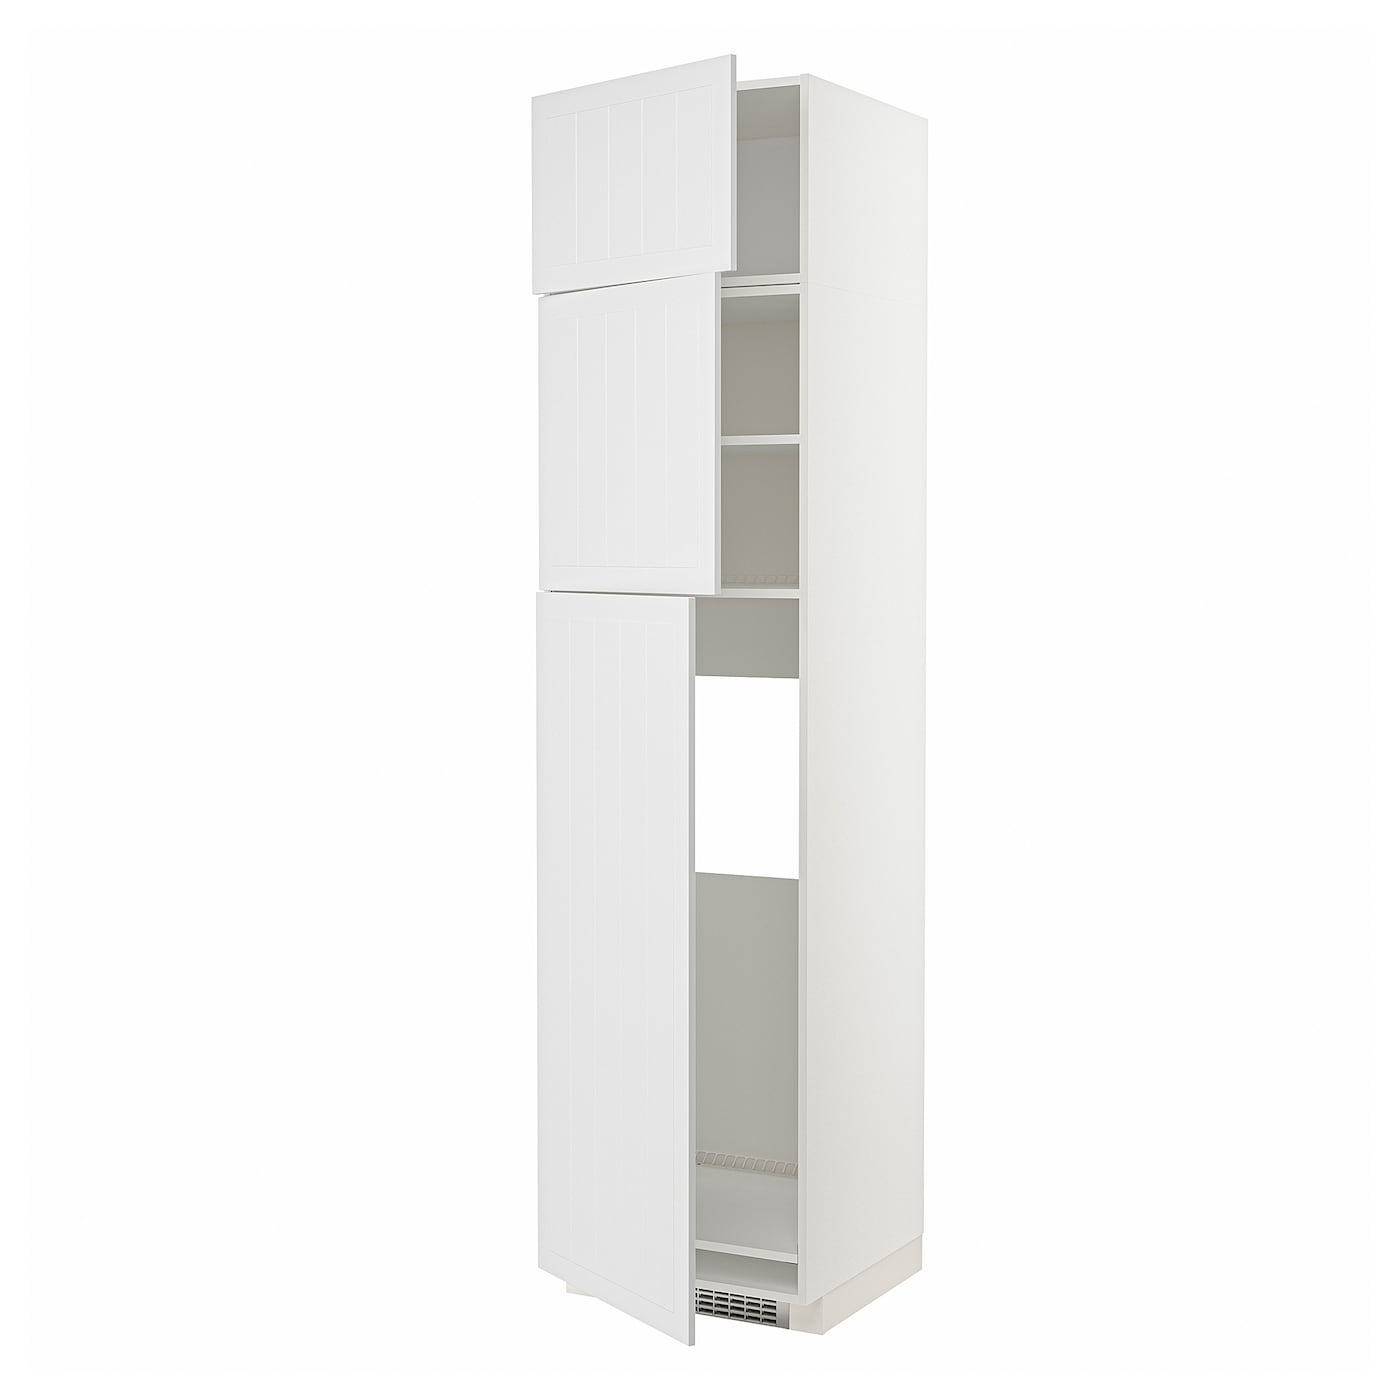 Модульный шкаф - METOD IKEA/ МЕТОД ИКЕА, 248х60 см, белый